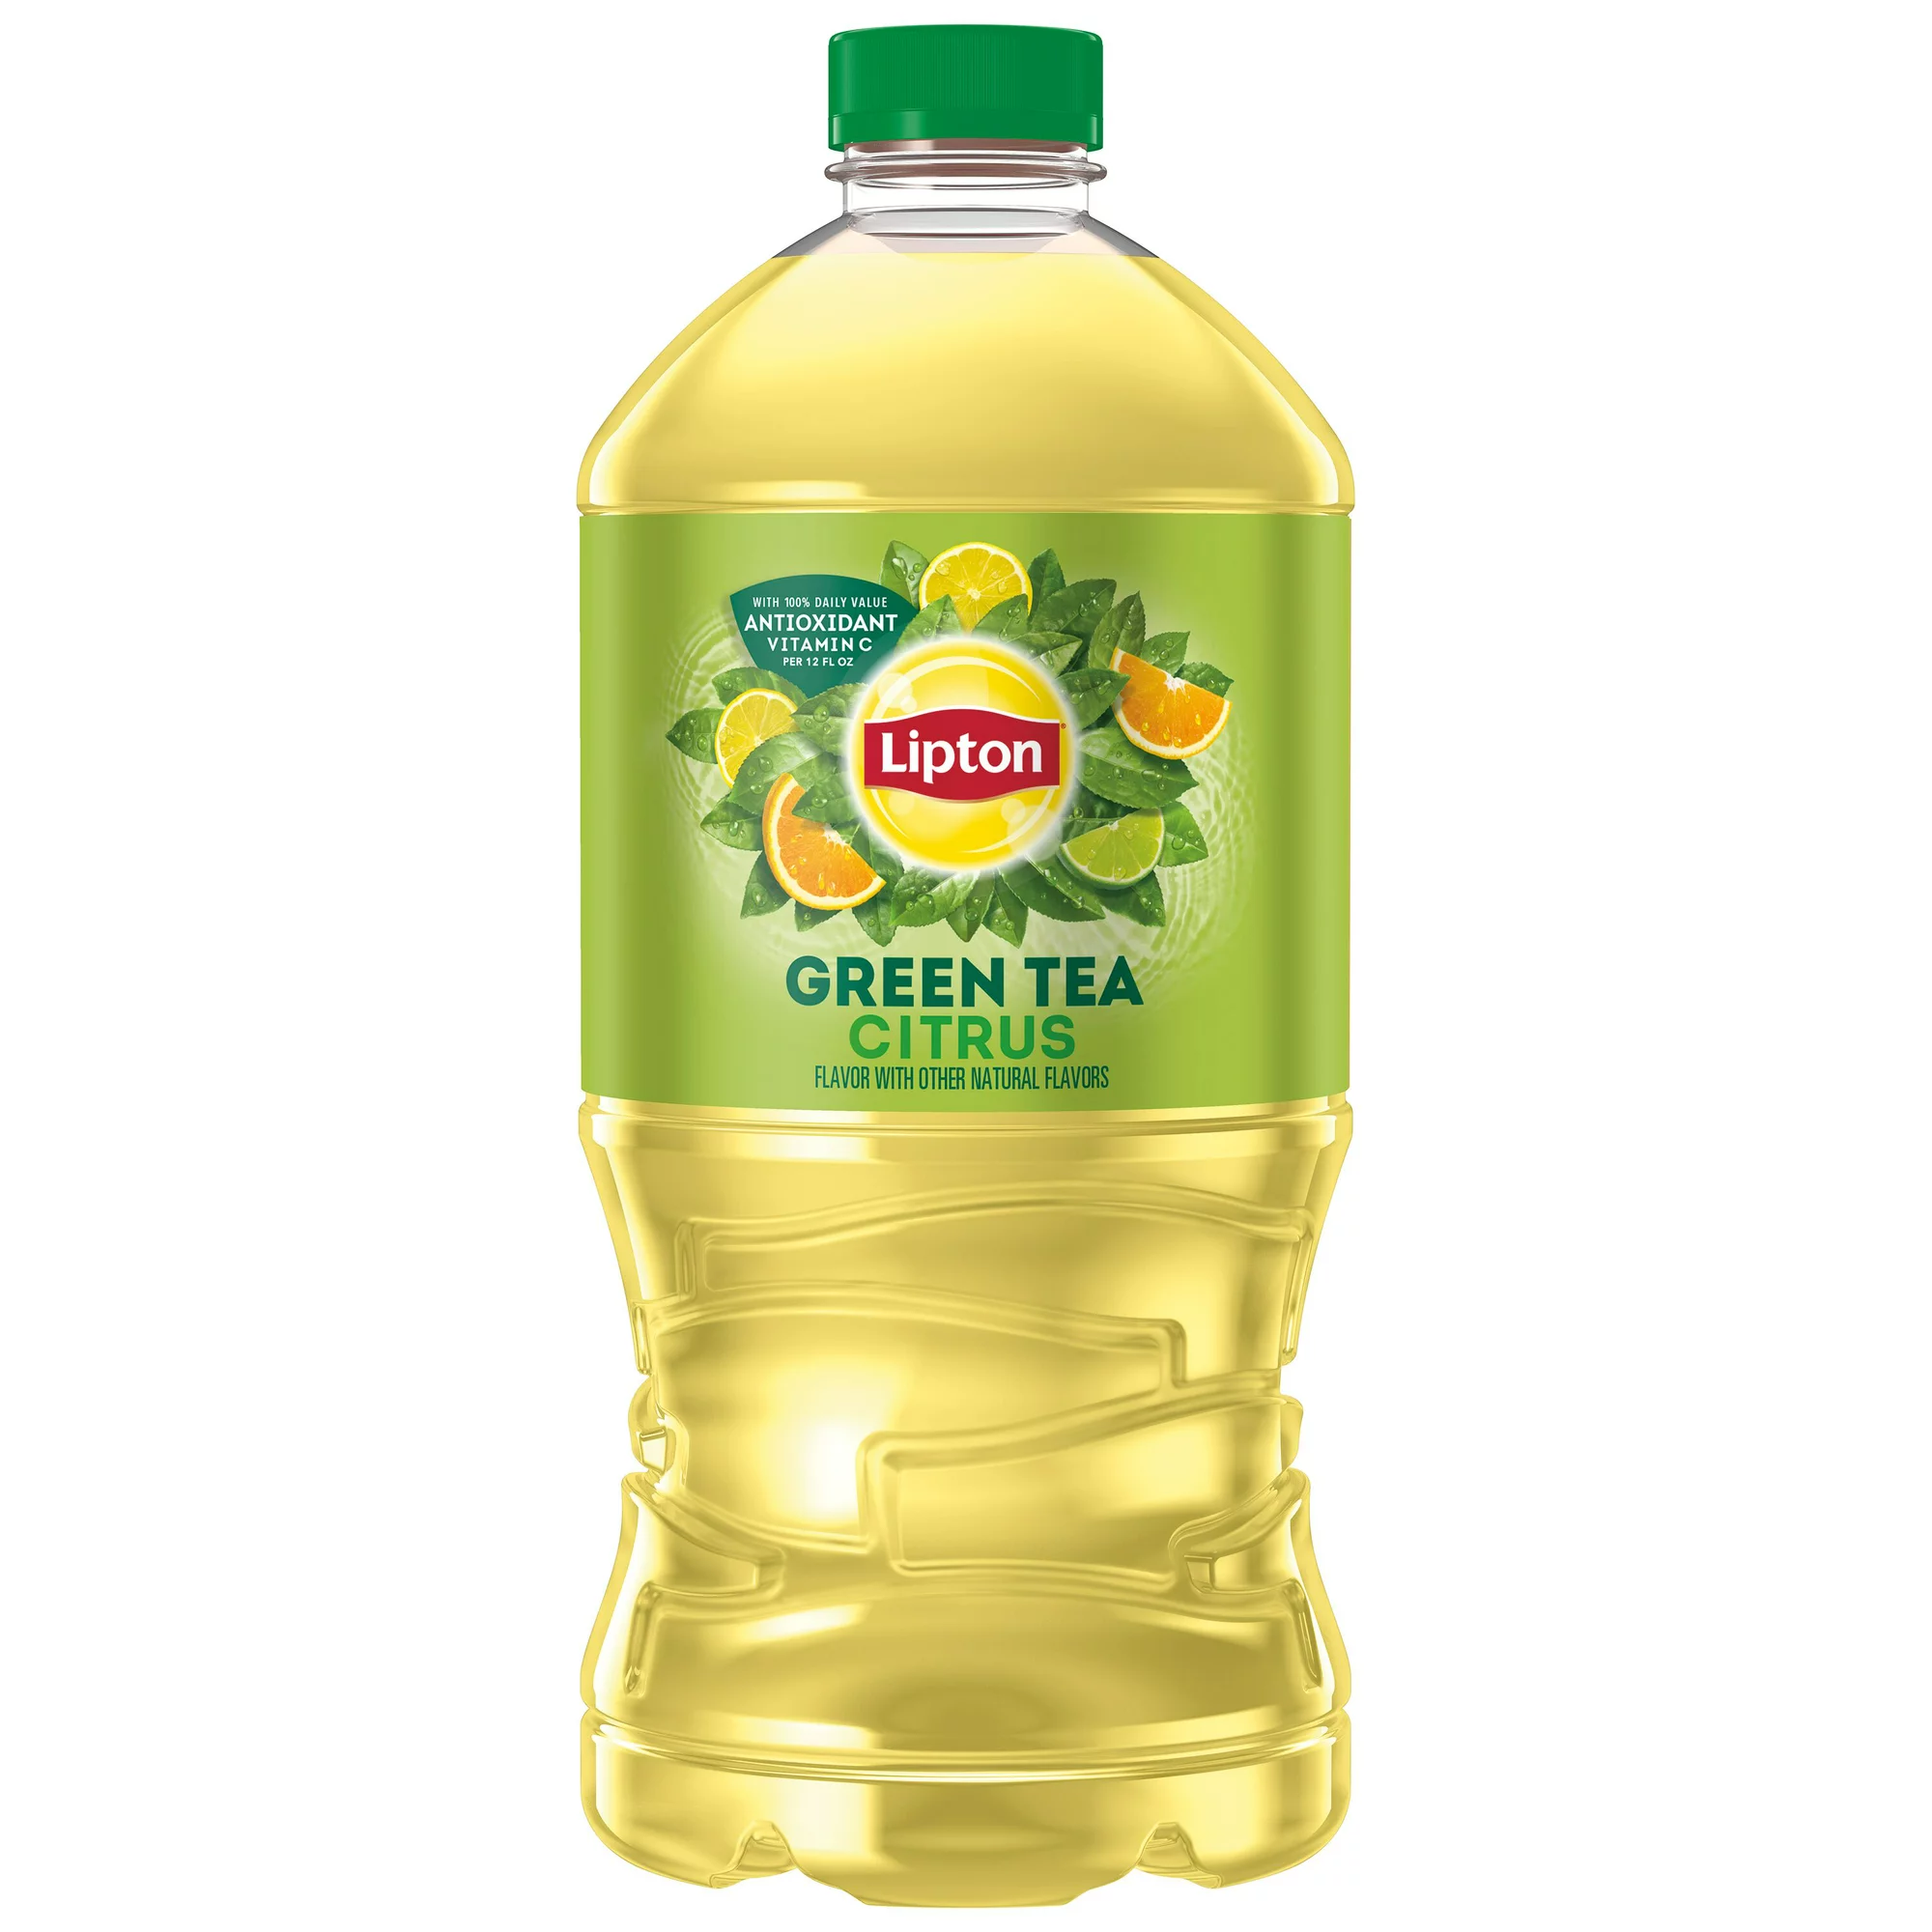 Litopn Green Tea